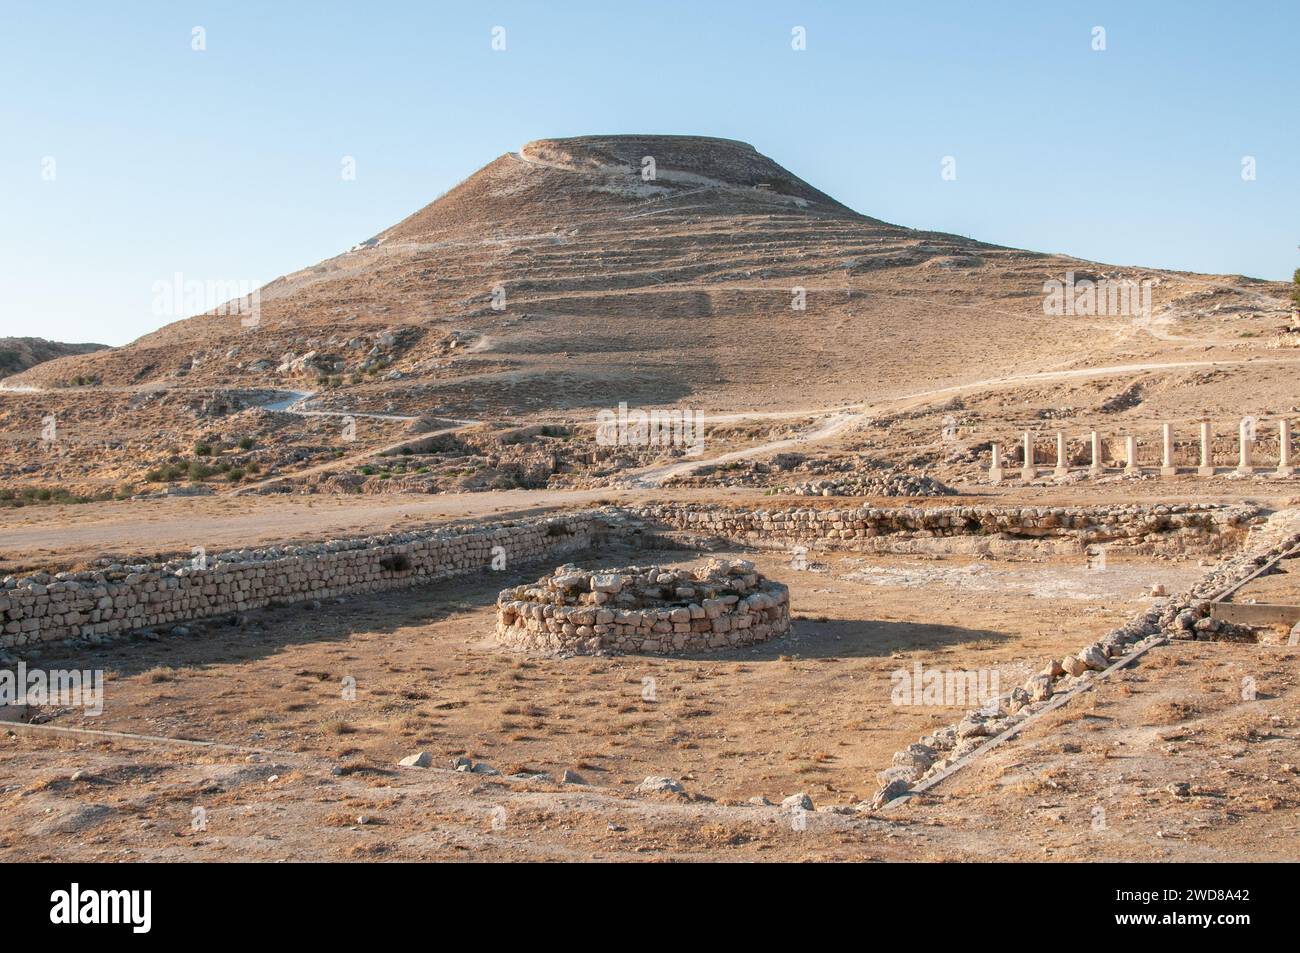 Hérodion, Hérodium, ou Jabal al-Fureidis est une ancienne forteresse située au sud de Jérusalem et Bethléem, construite par le roi de Judée Hérode le Grand Betwe Banque D'Images